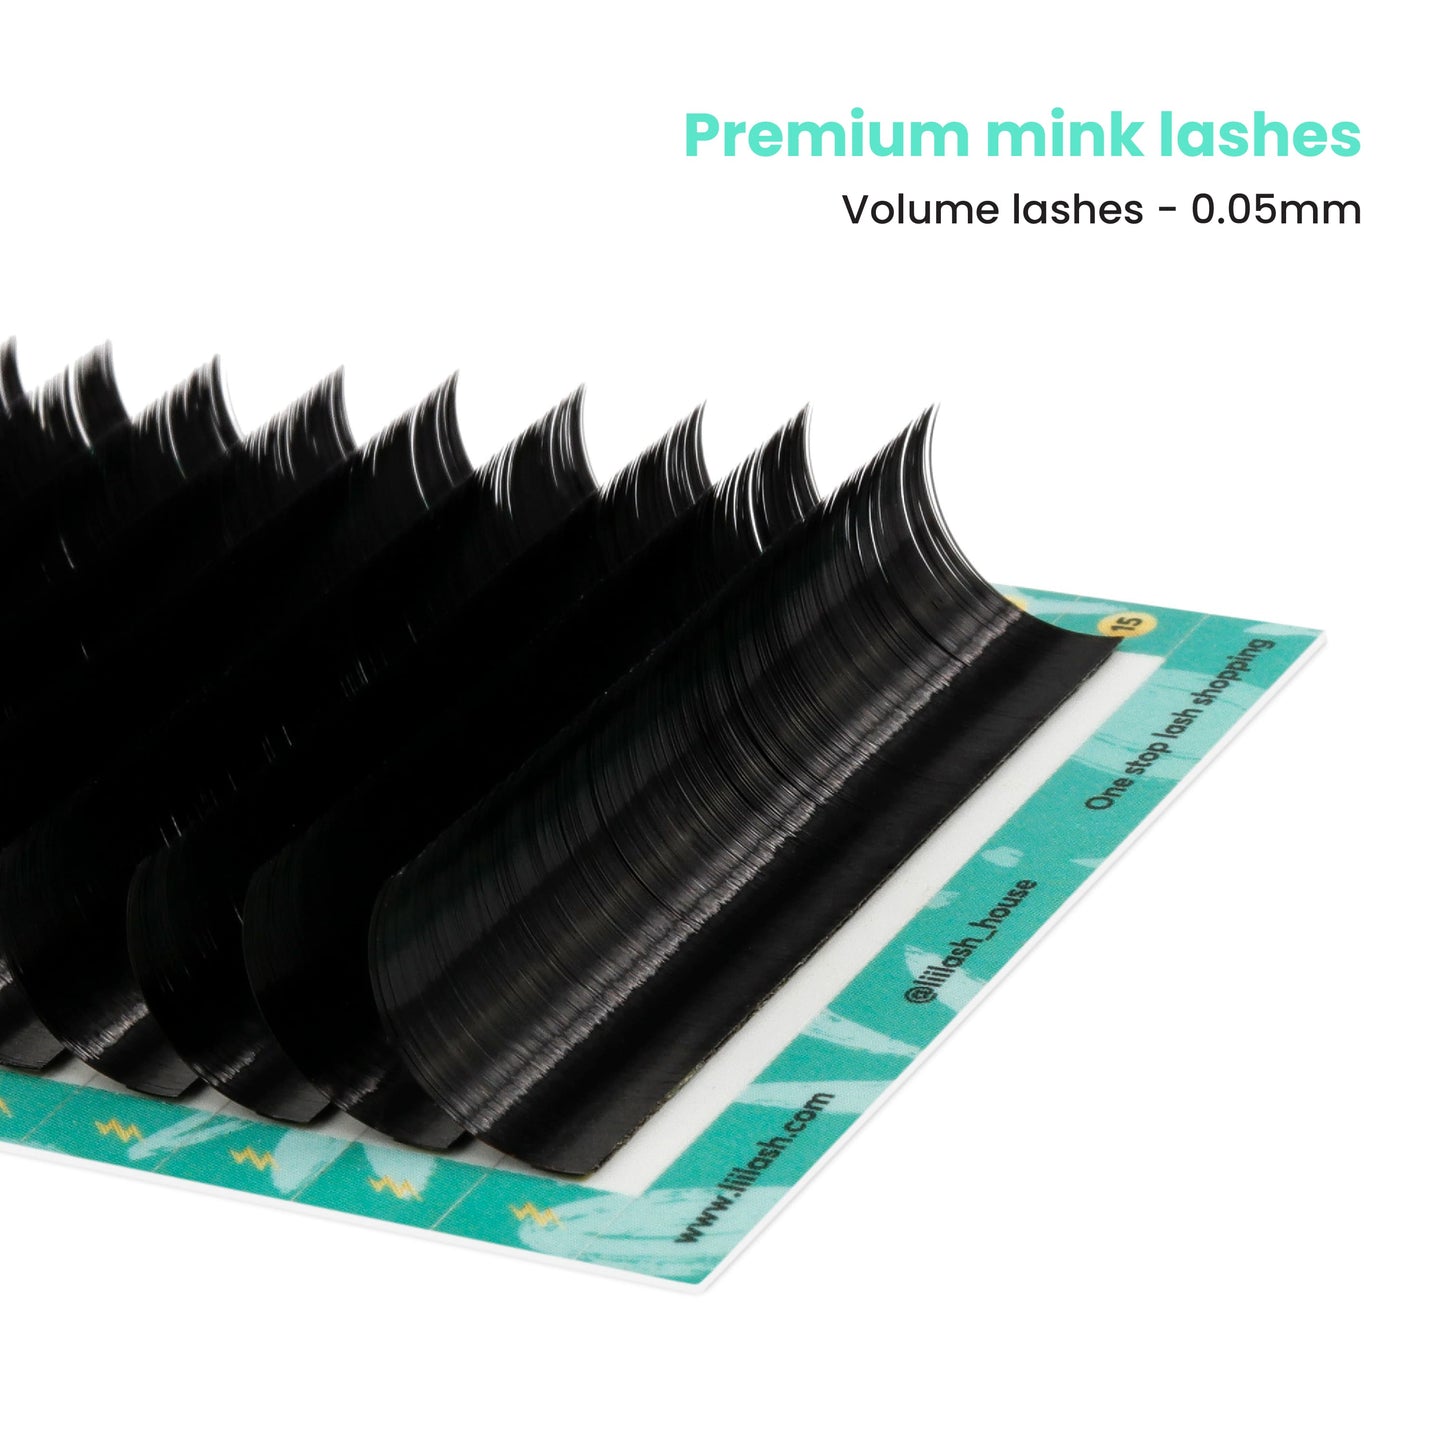 Premium Mink volume lashes 0.05mm